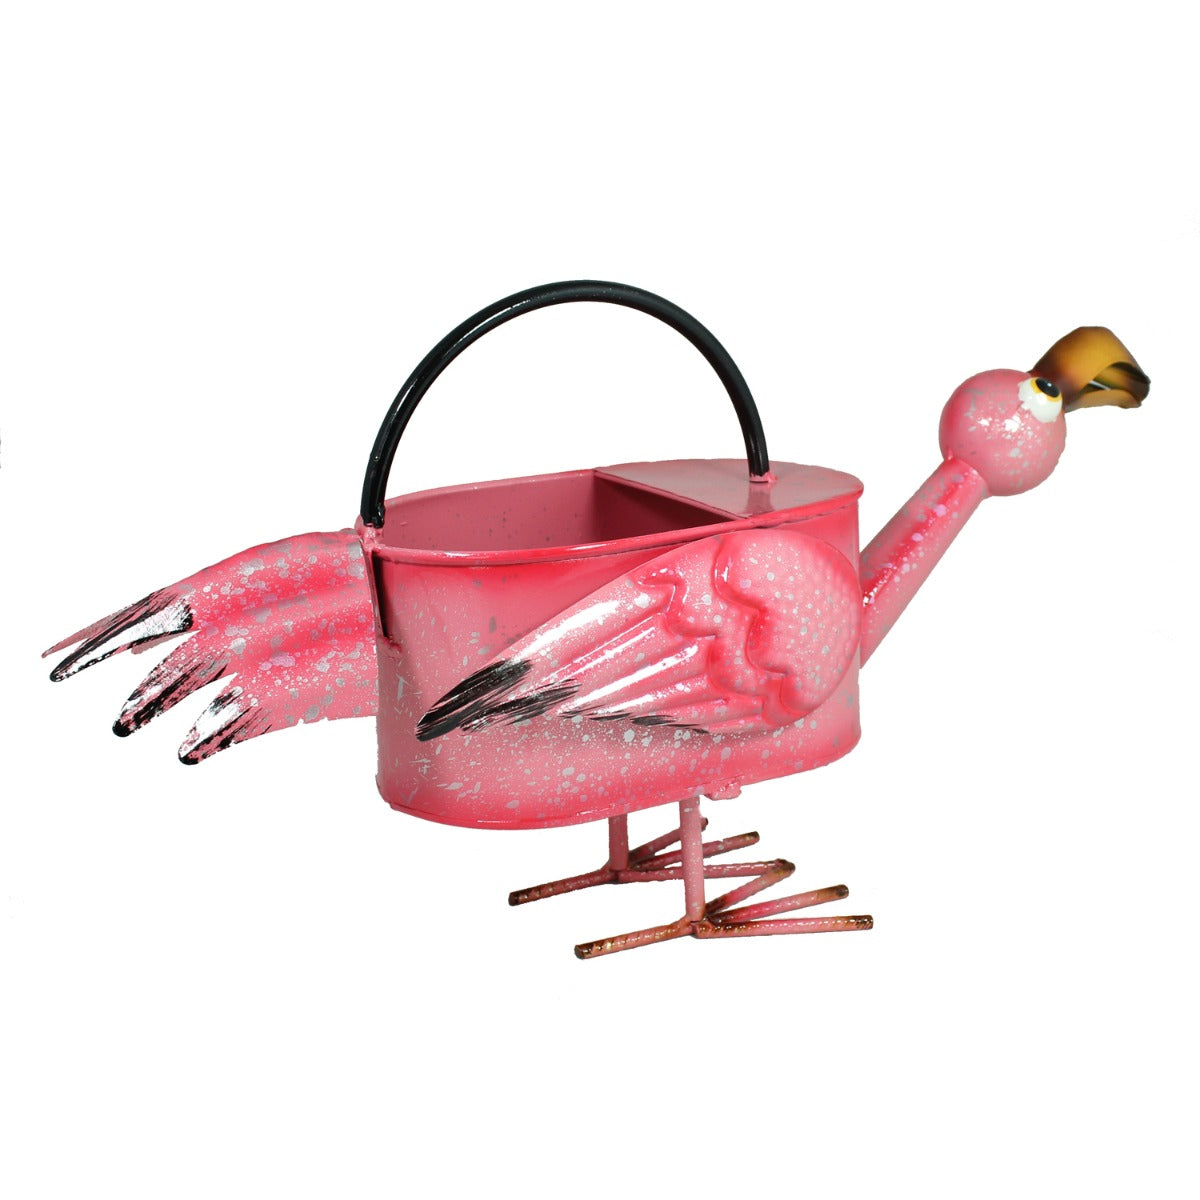 Gießkanne Metall Flamingo 1,5 l Gießkanne dekorativ Metallgießkanne